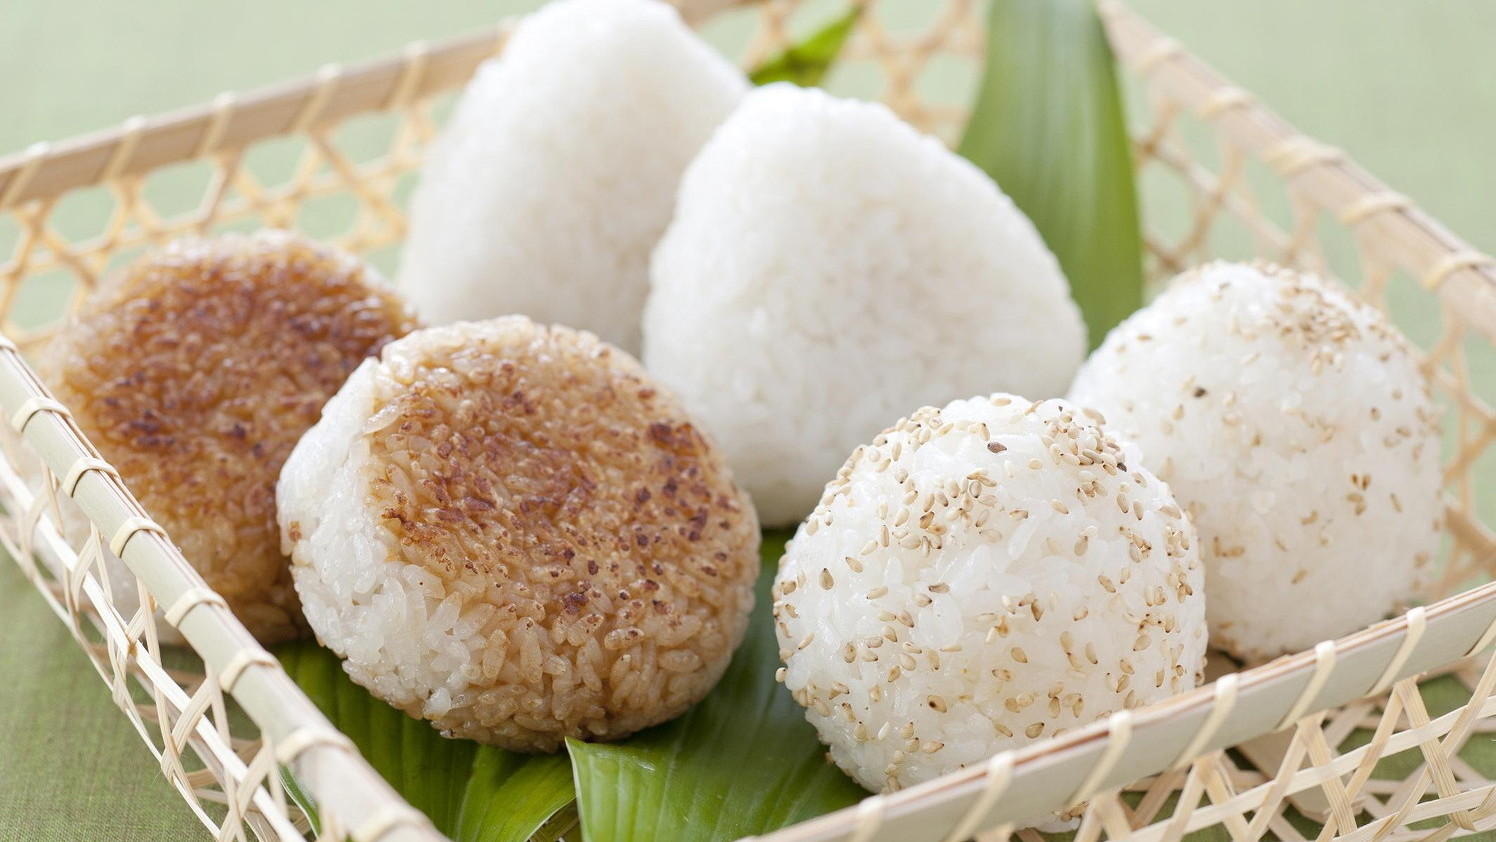 Kokimo Food - A tropa do onigiri de atum com maionese! 🐟😎 Venha conhecer  a casa de onigiri! 😊 📍 Rua da Glória, 280 - na Galeria Legal - box (08 e